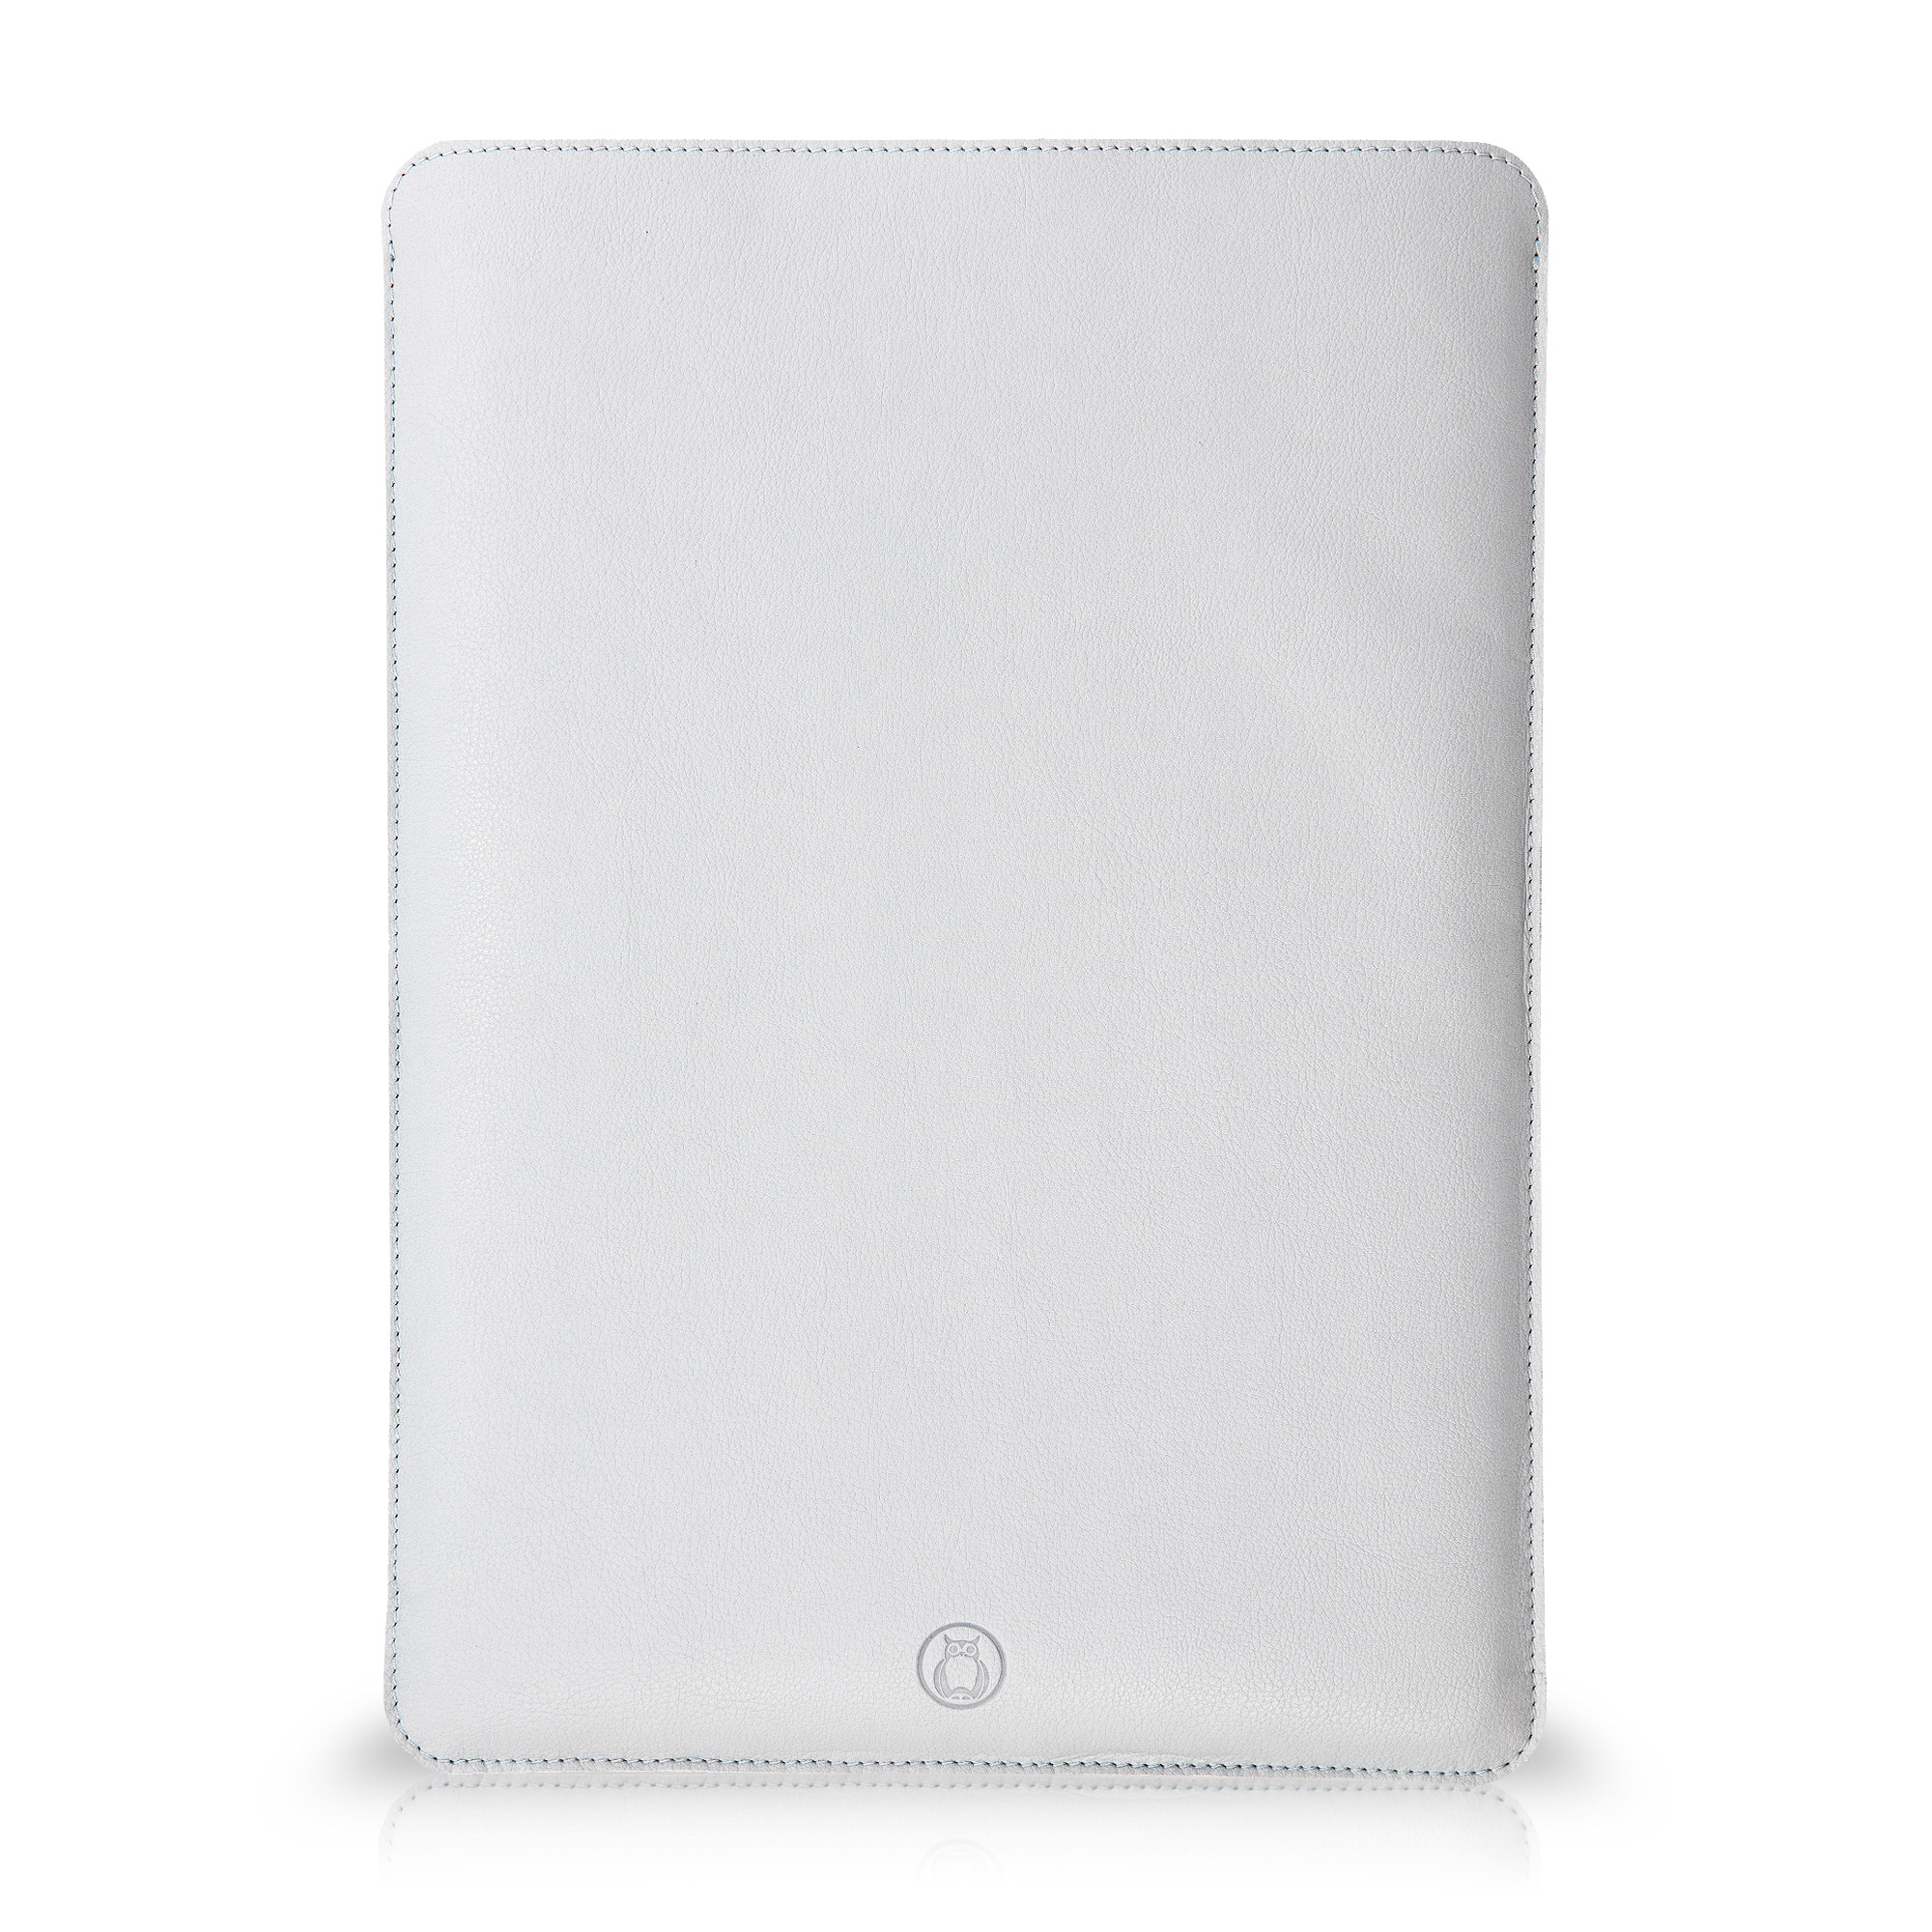 Husa laptop MacBook 13 inch UNIKA piele PU cu lana din fibre naturale gri sanito.ro imagine model 2022